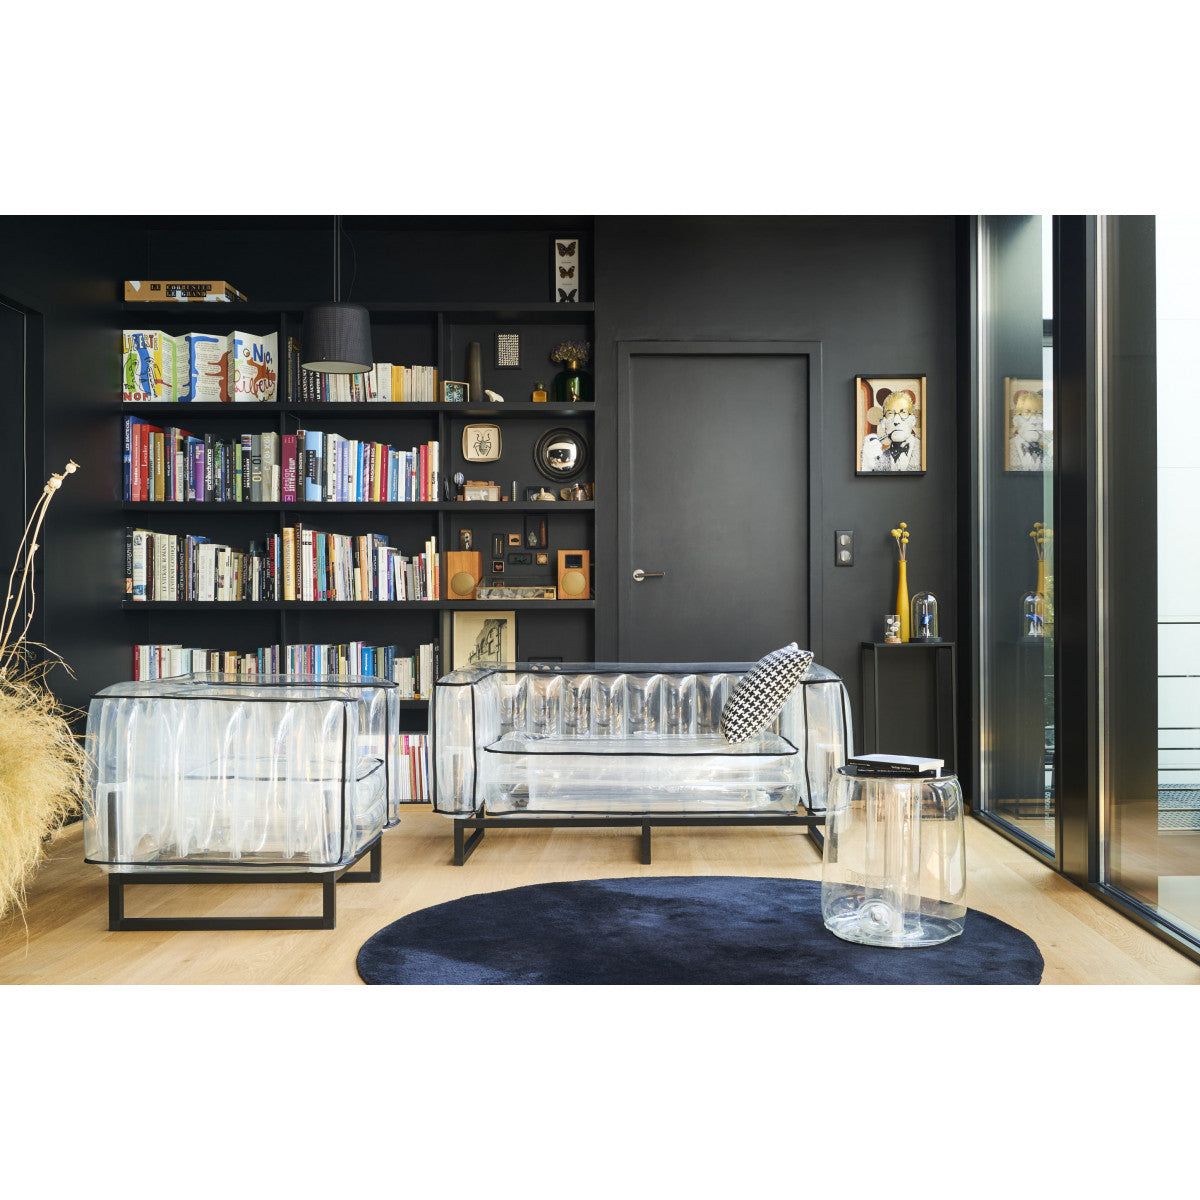 MOJOW - YOMI EKO Style Sofa / Aluminum Frame